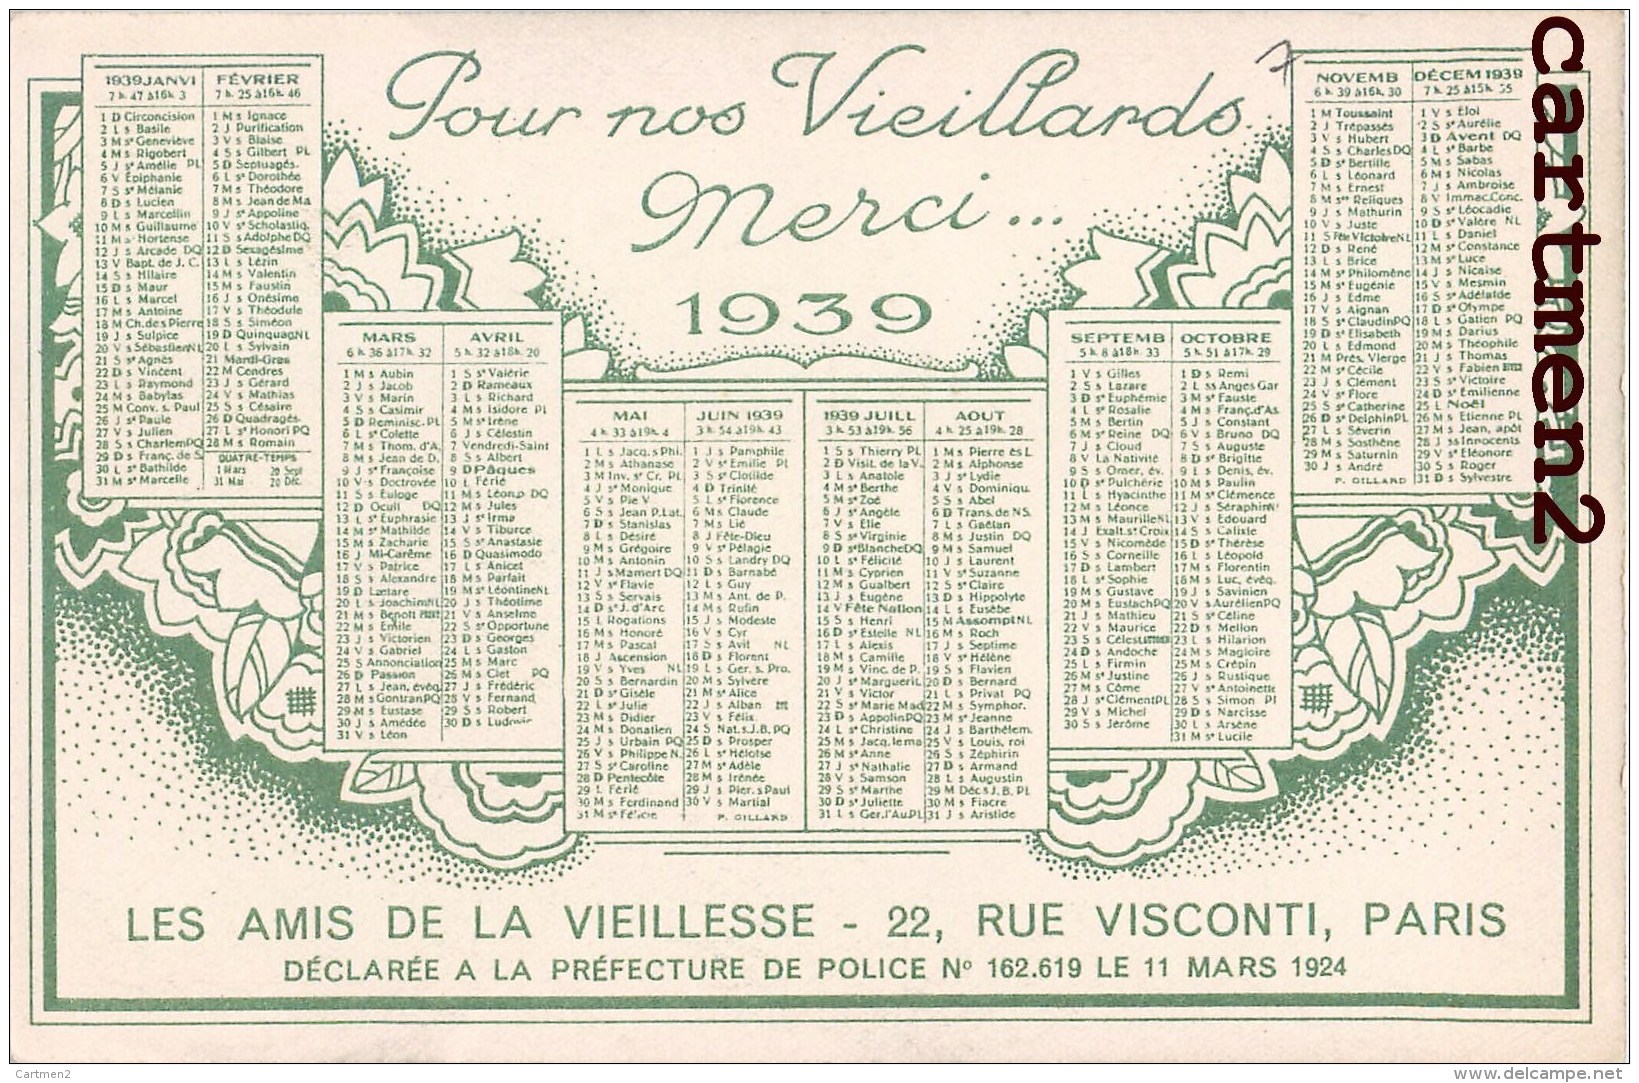 CALENDRIER ANNEE 1939 LES AMIS DE LA VIEILLESSE 22 RUE VISCONTI PARIS ASSOCIATION CARITATIVE ILLUSTRATEUR - Labor Unions